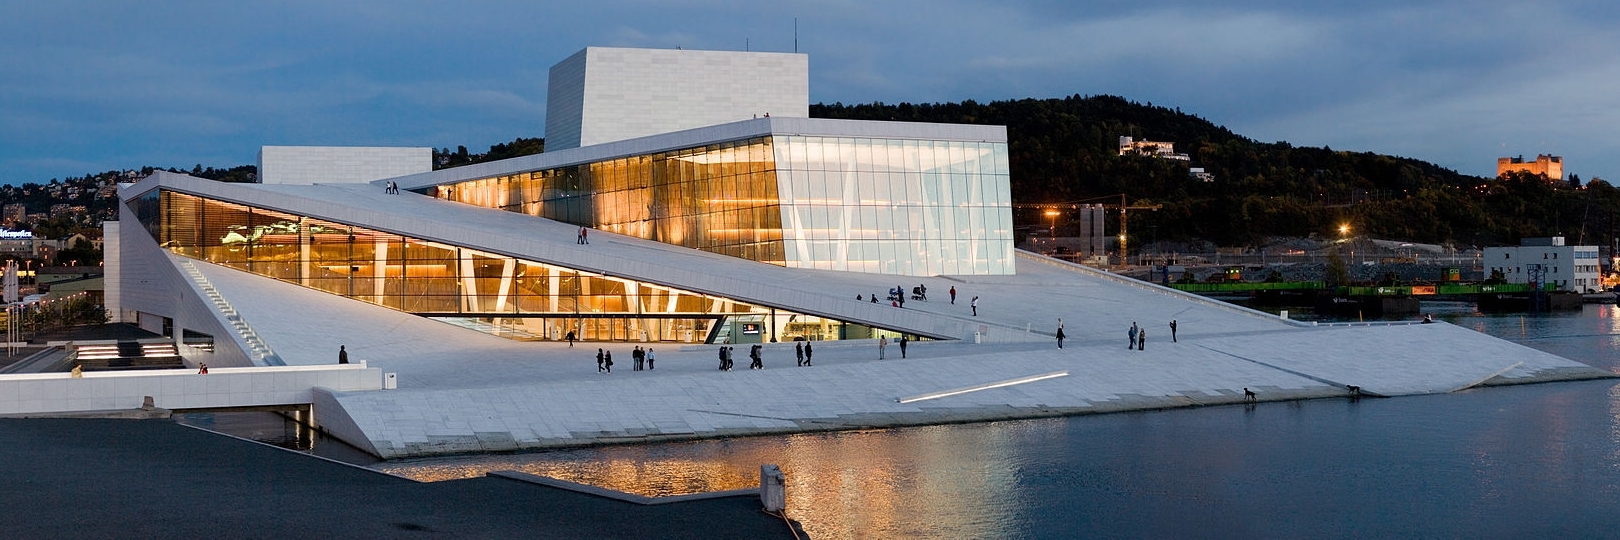 Nhà Hát Opera Oslo (Oslo Opera House), Oslo, Norway (Nauy)